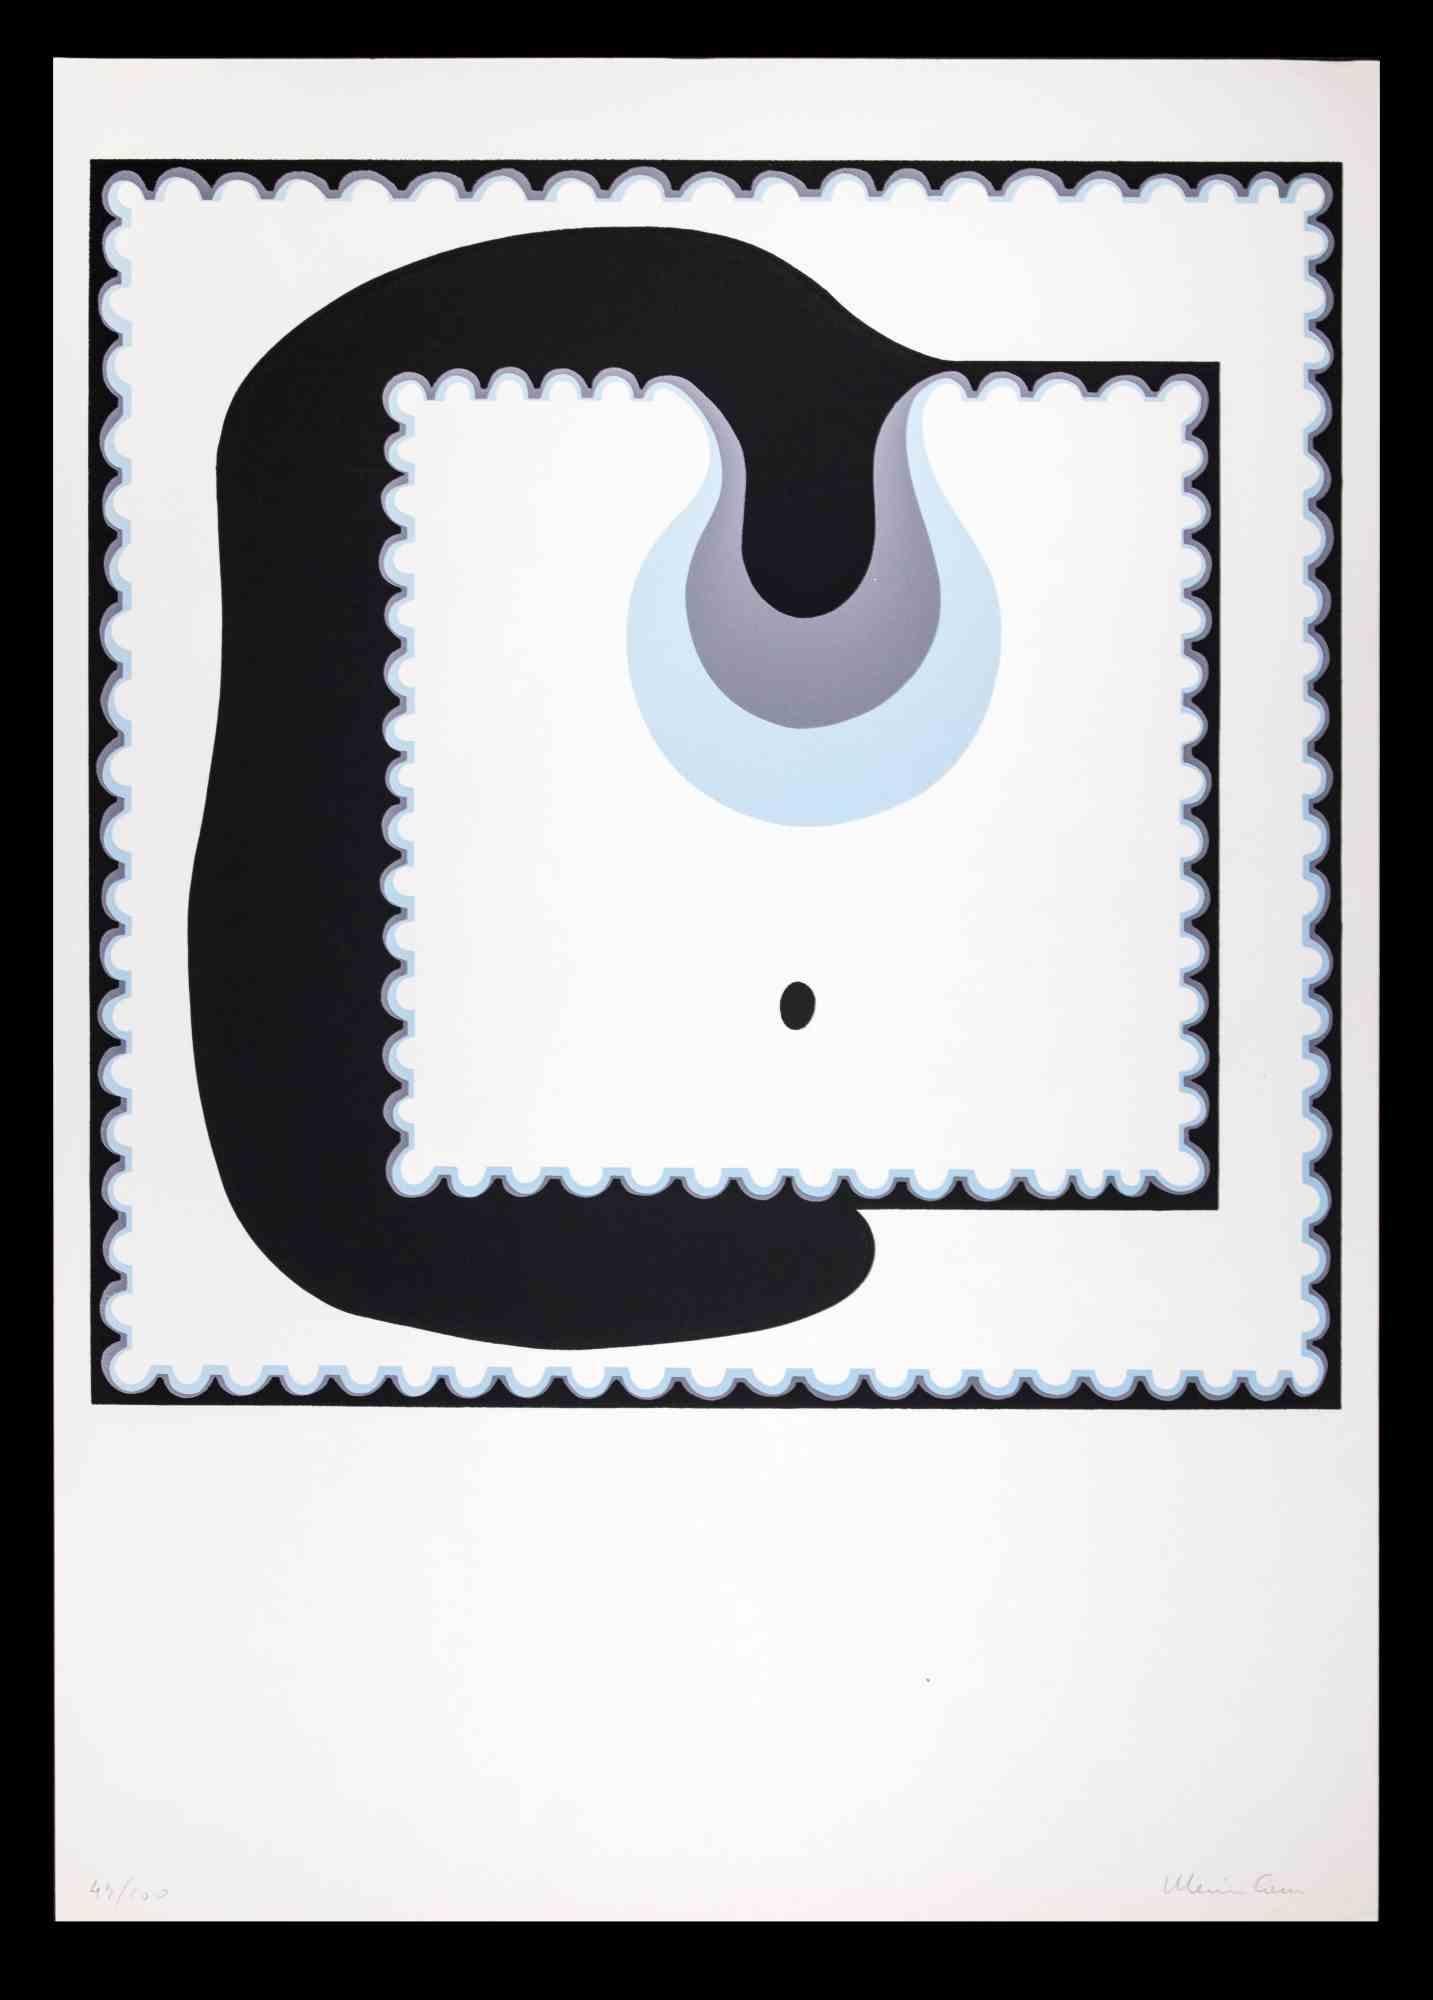 Abstract Composition ist ein Original-Siebdruck von Plinio Mesciulam aus dem Jahr 1973.

Sehr guter Zustand auf einem weißen Karton.

Vom Künstler am unteren Rand handsigniert und nummeriert.

Limitierte Auflage n.43 von 100 Exemplaren, Herausgeber